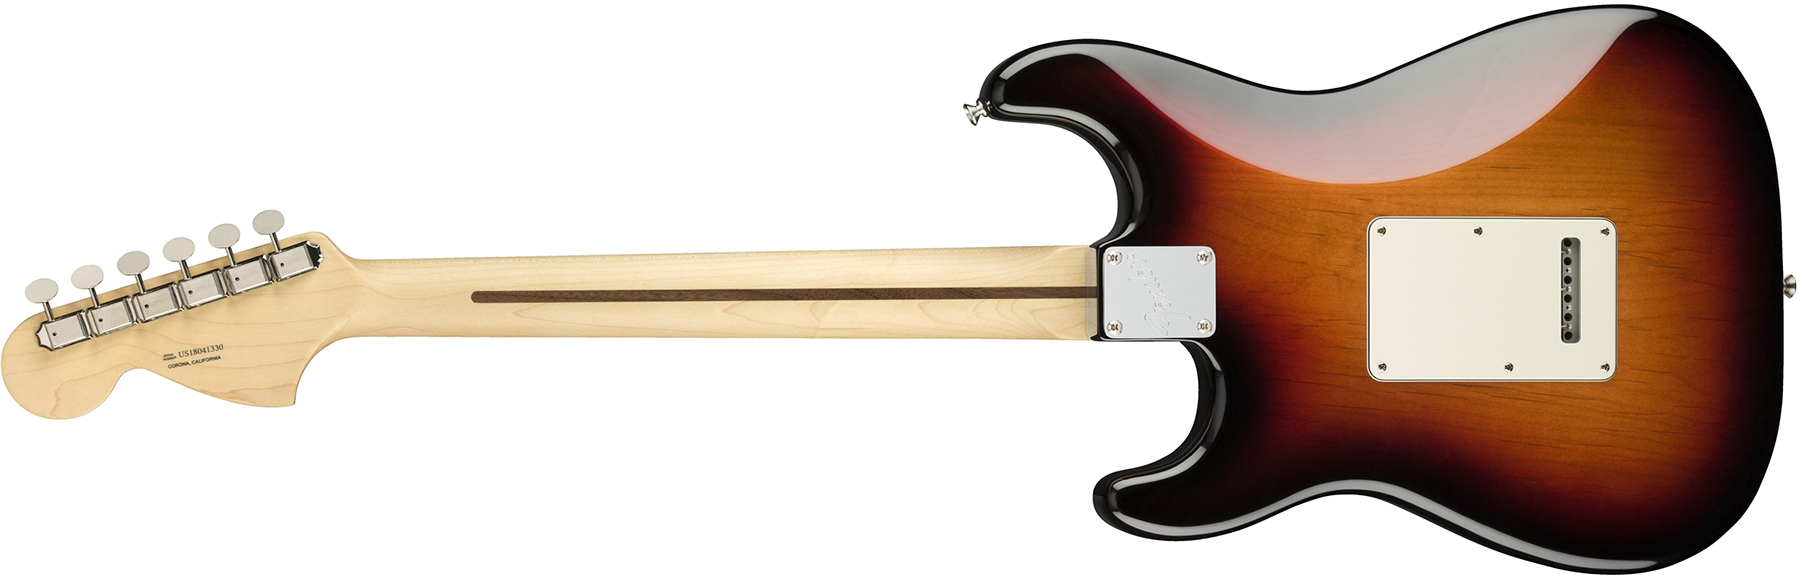 Fender Strat American Performer Usa Hss Rw - 3 Color Sunburst - Guitare Électrique Forme Str - Variation 1